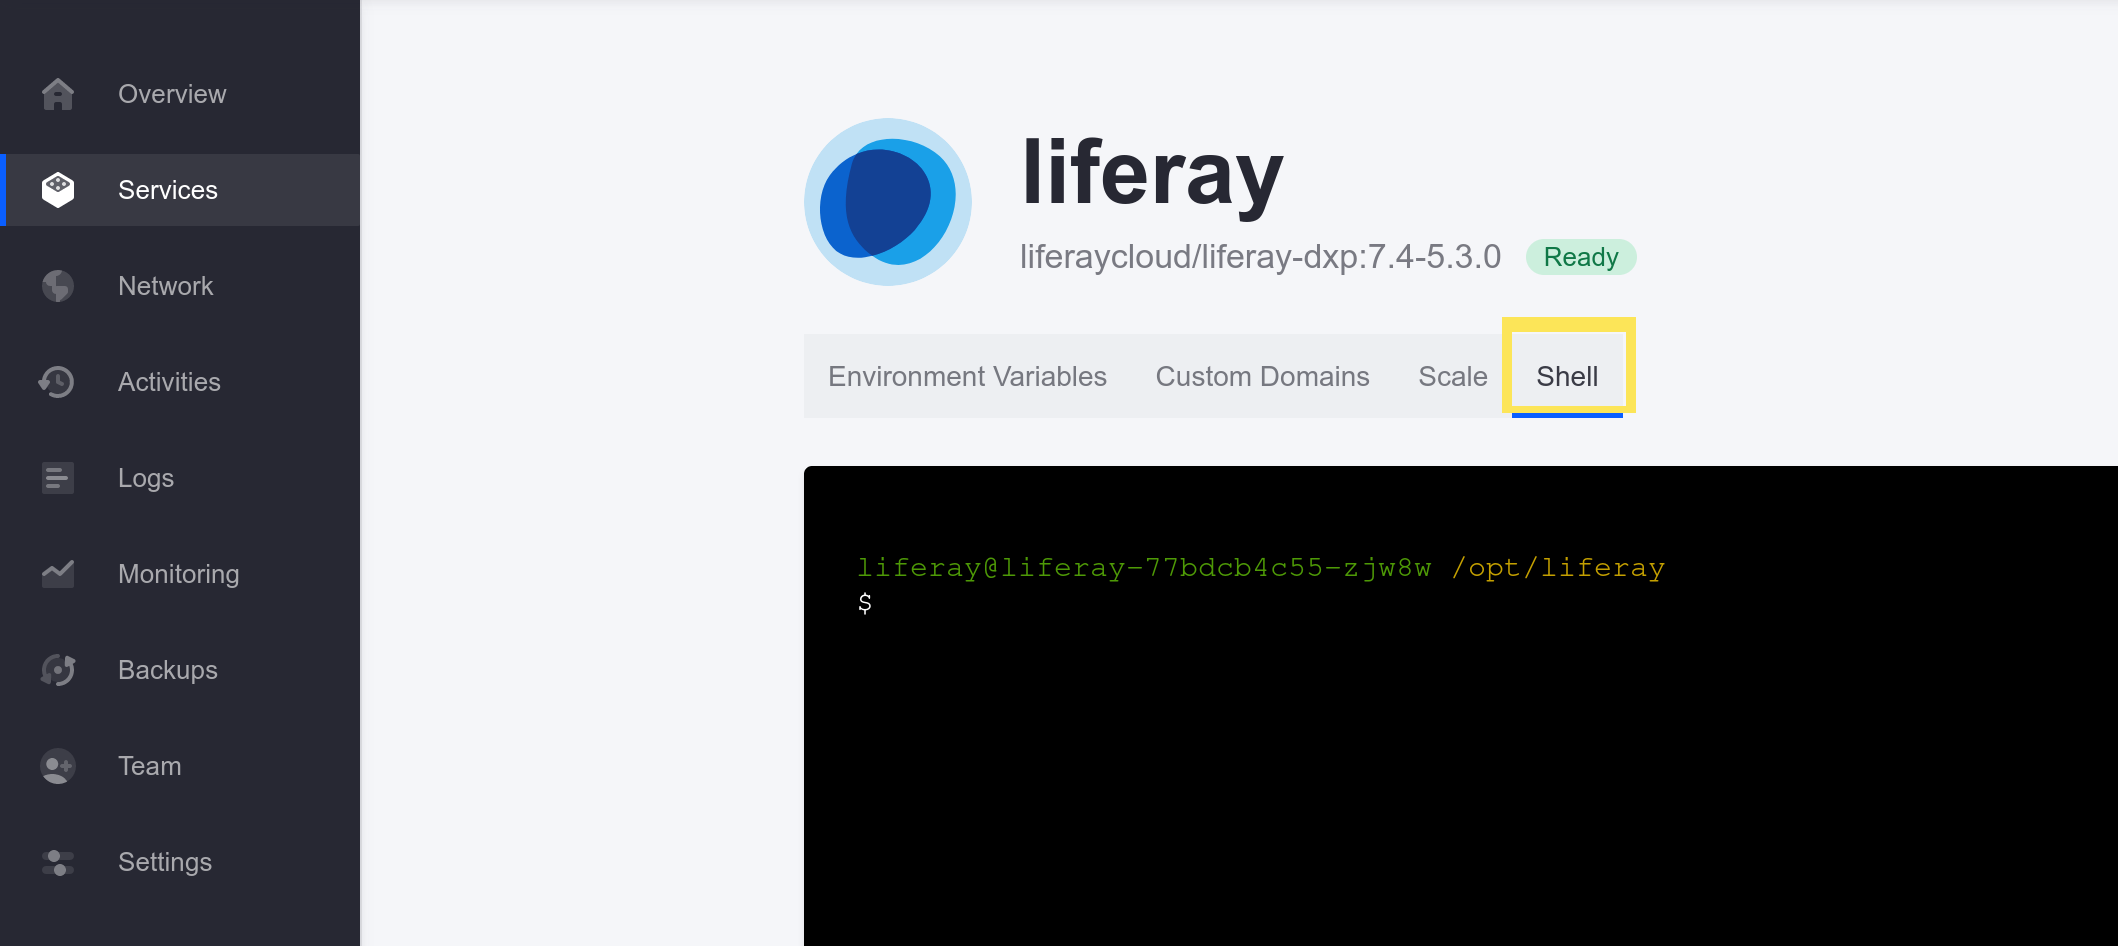 Access the liferay service shell to run the script.